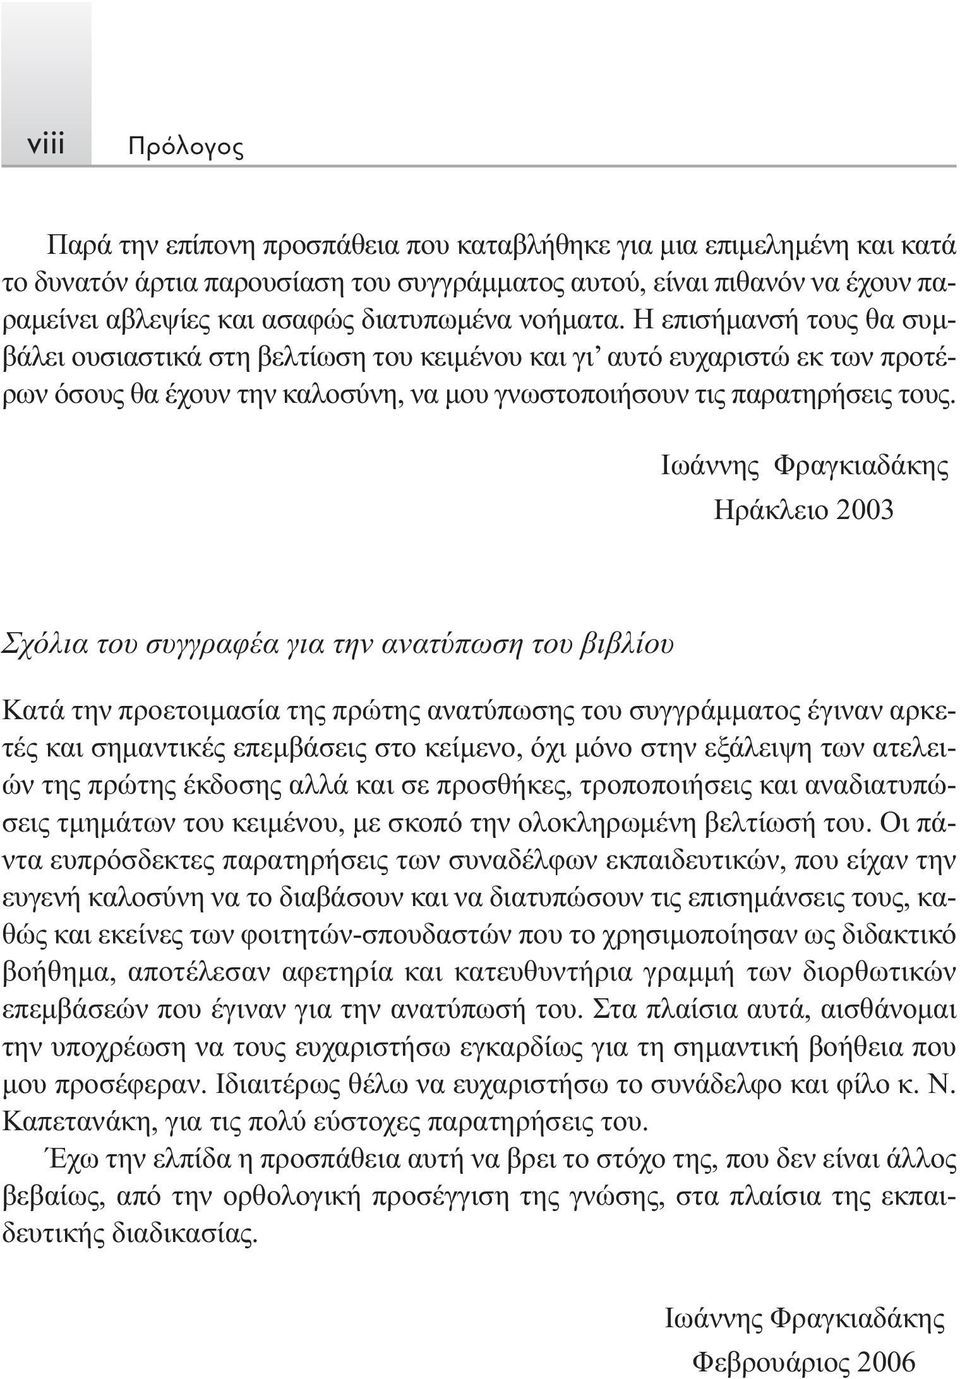 Ιωάννης Φραγκιαδάκης Ηράκλειο 2003 Σχόλια του συγγραφέα για την ανατύπωση του βιβλίου Κατά την προετοιμασία της πρώτης ανατύπωσης του συγγράμματος έγιναν αρκετές και σημαντικές επεμβάσεις στο